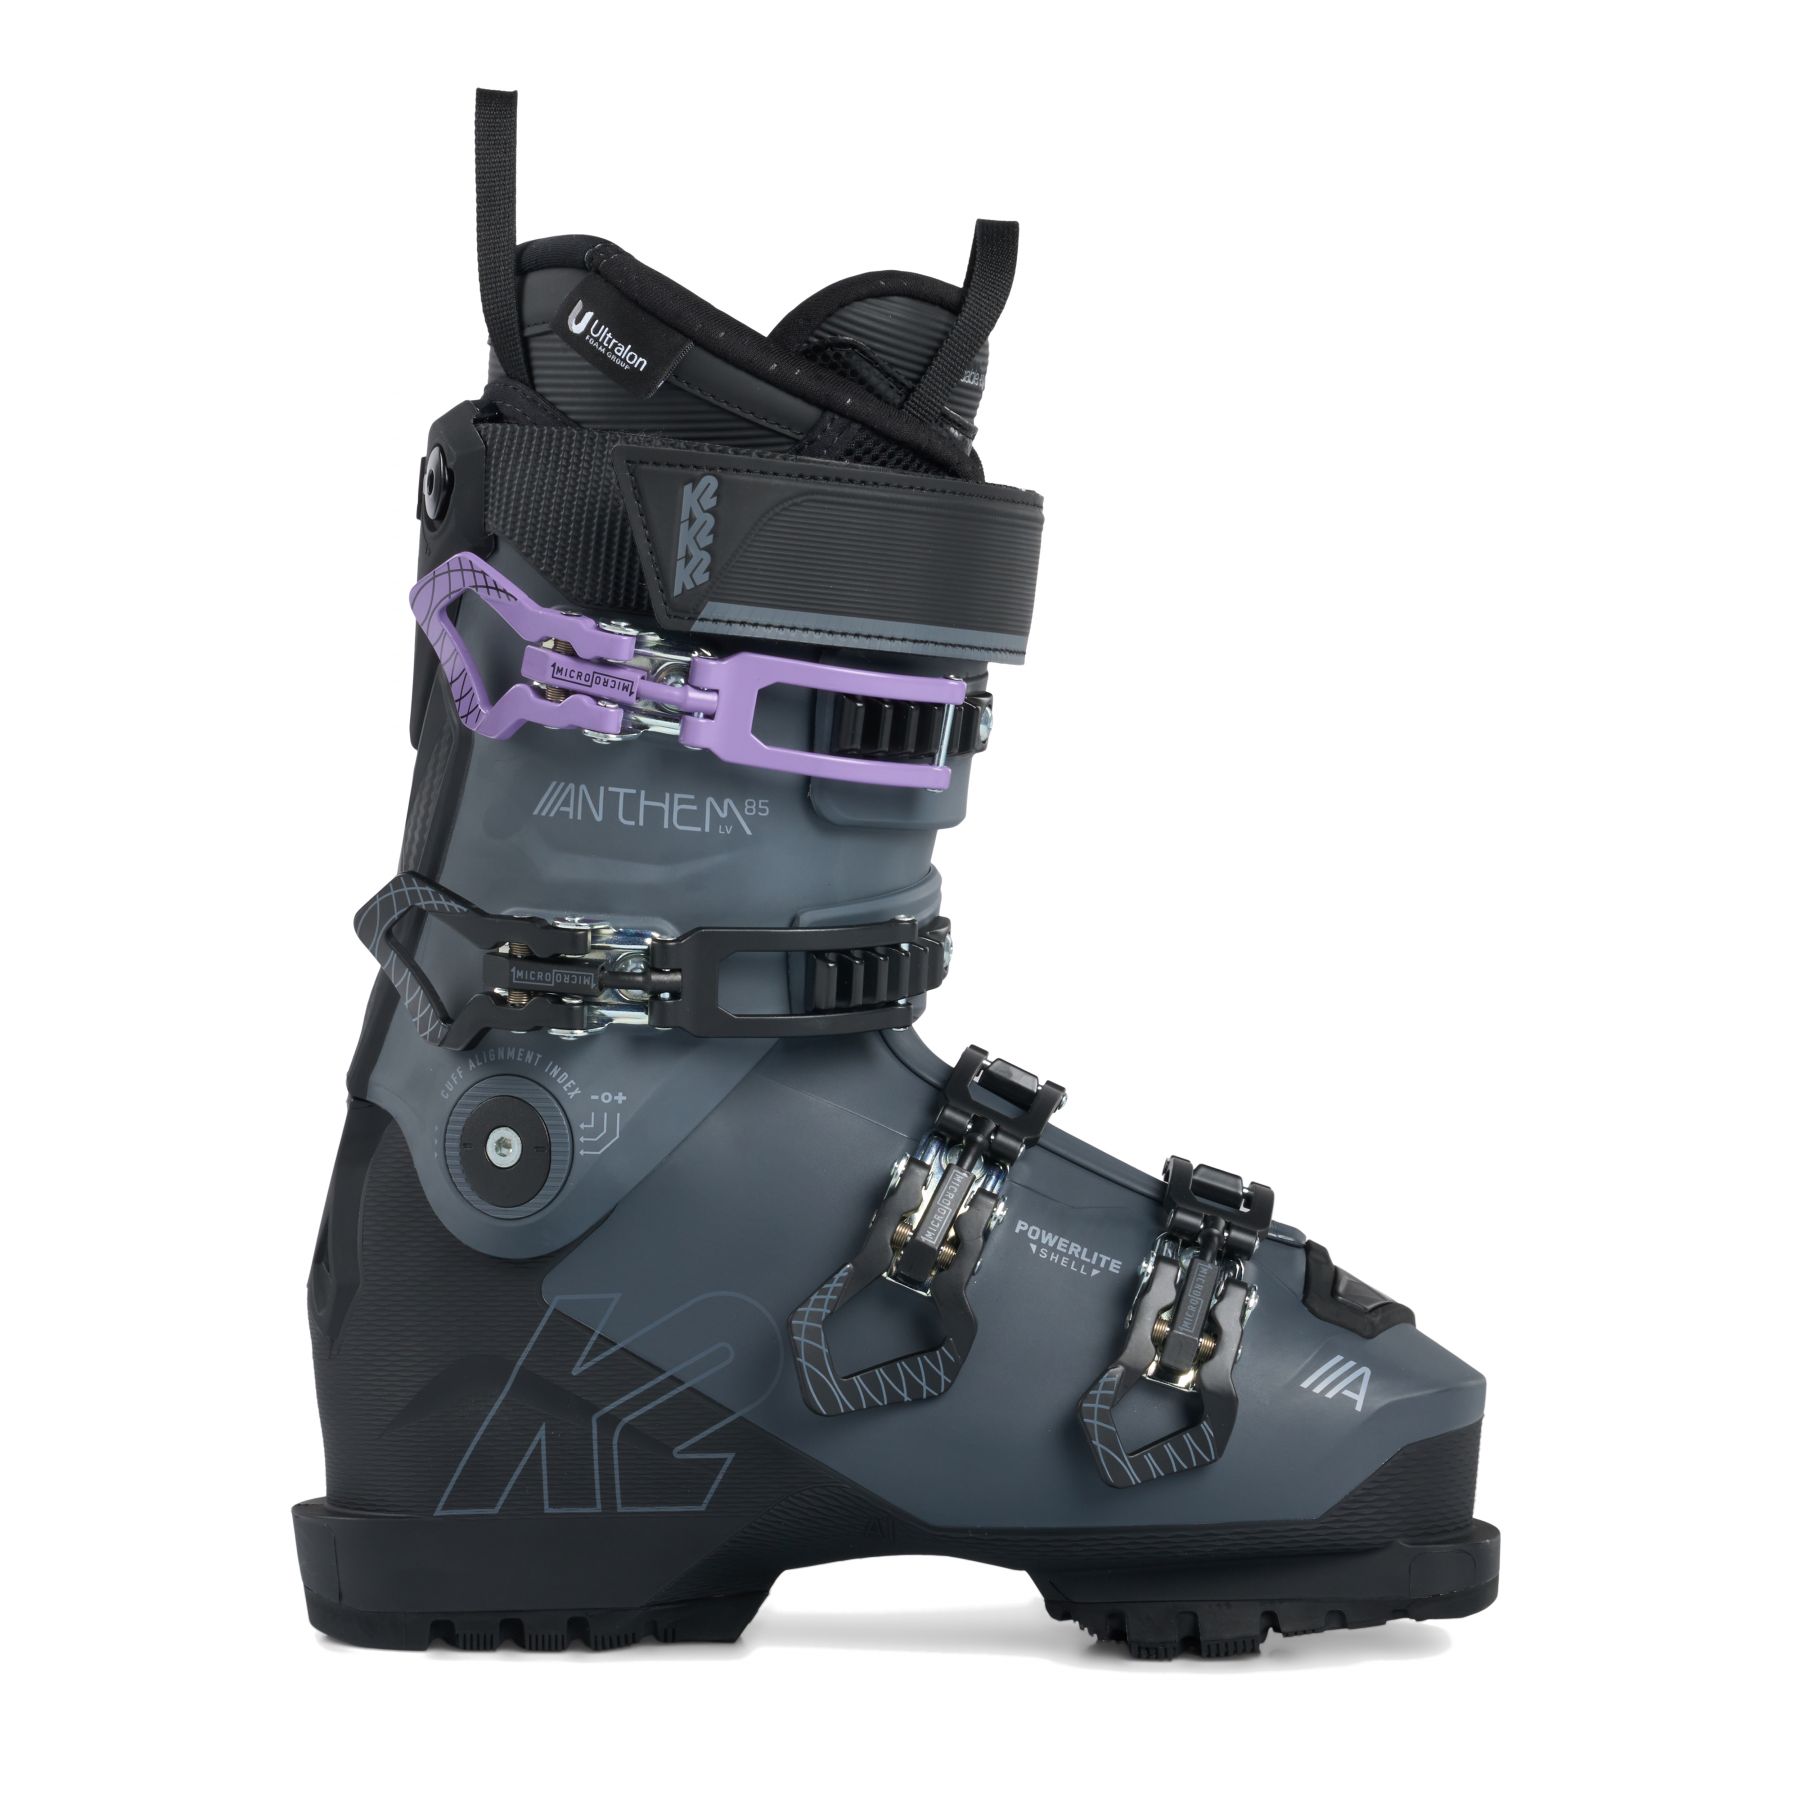 Billede af K2 Anthem 85 LV, skistøvler, dame, grå hos Skisport.dk